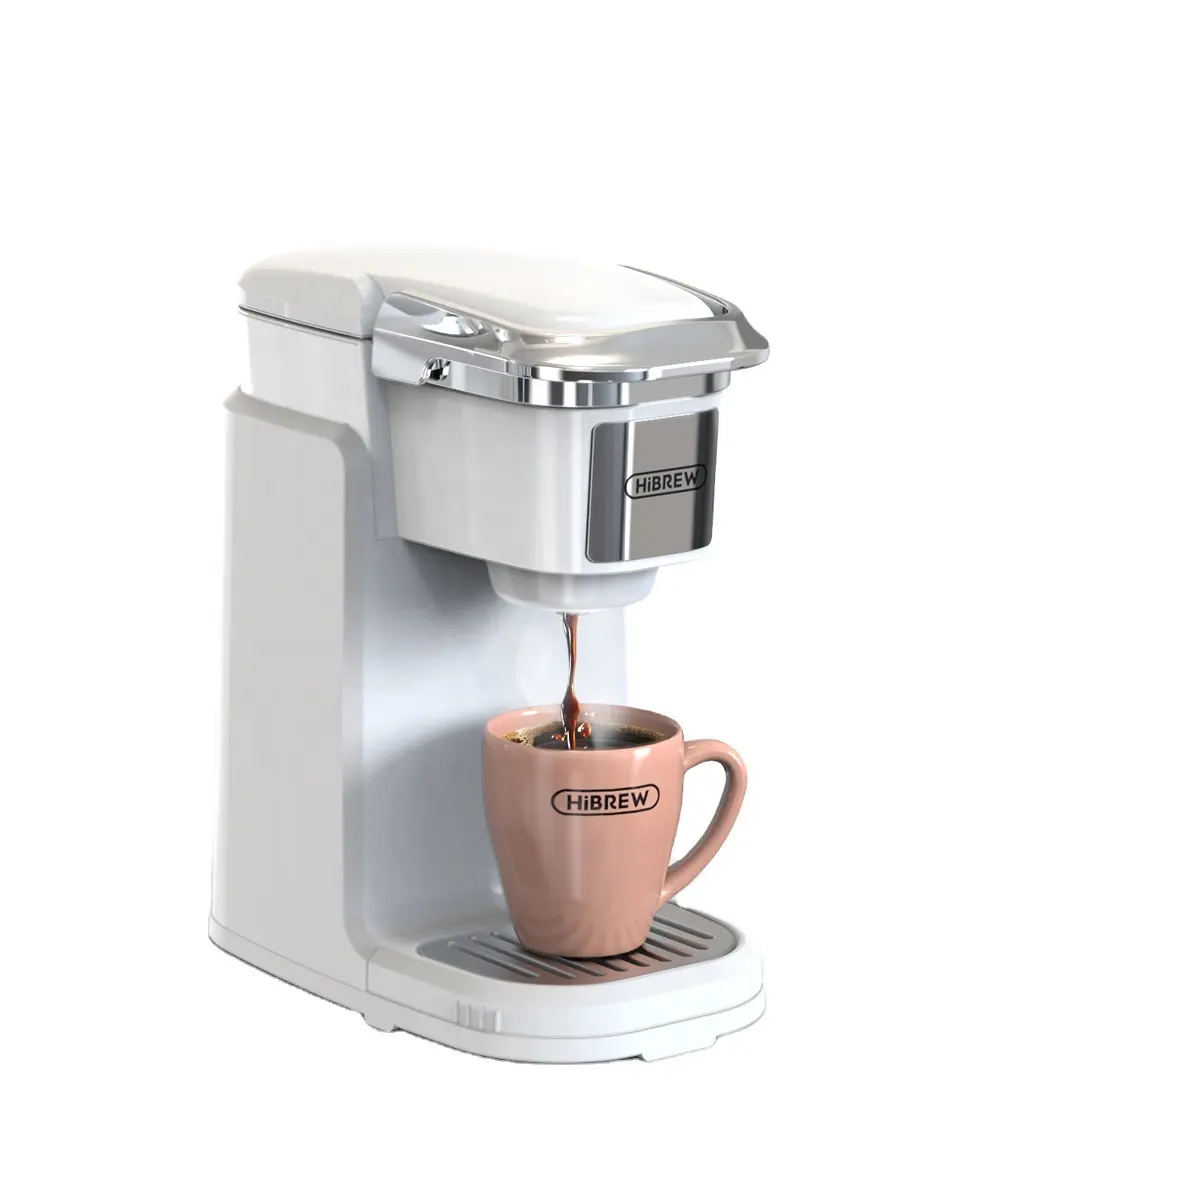 HiBREWKカップシリーズカプセルコーヒーメーカーワンクリックコーヒーマシン300ml大容量アメリカンコーヒー